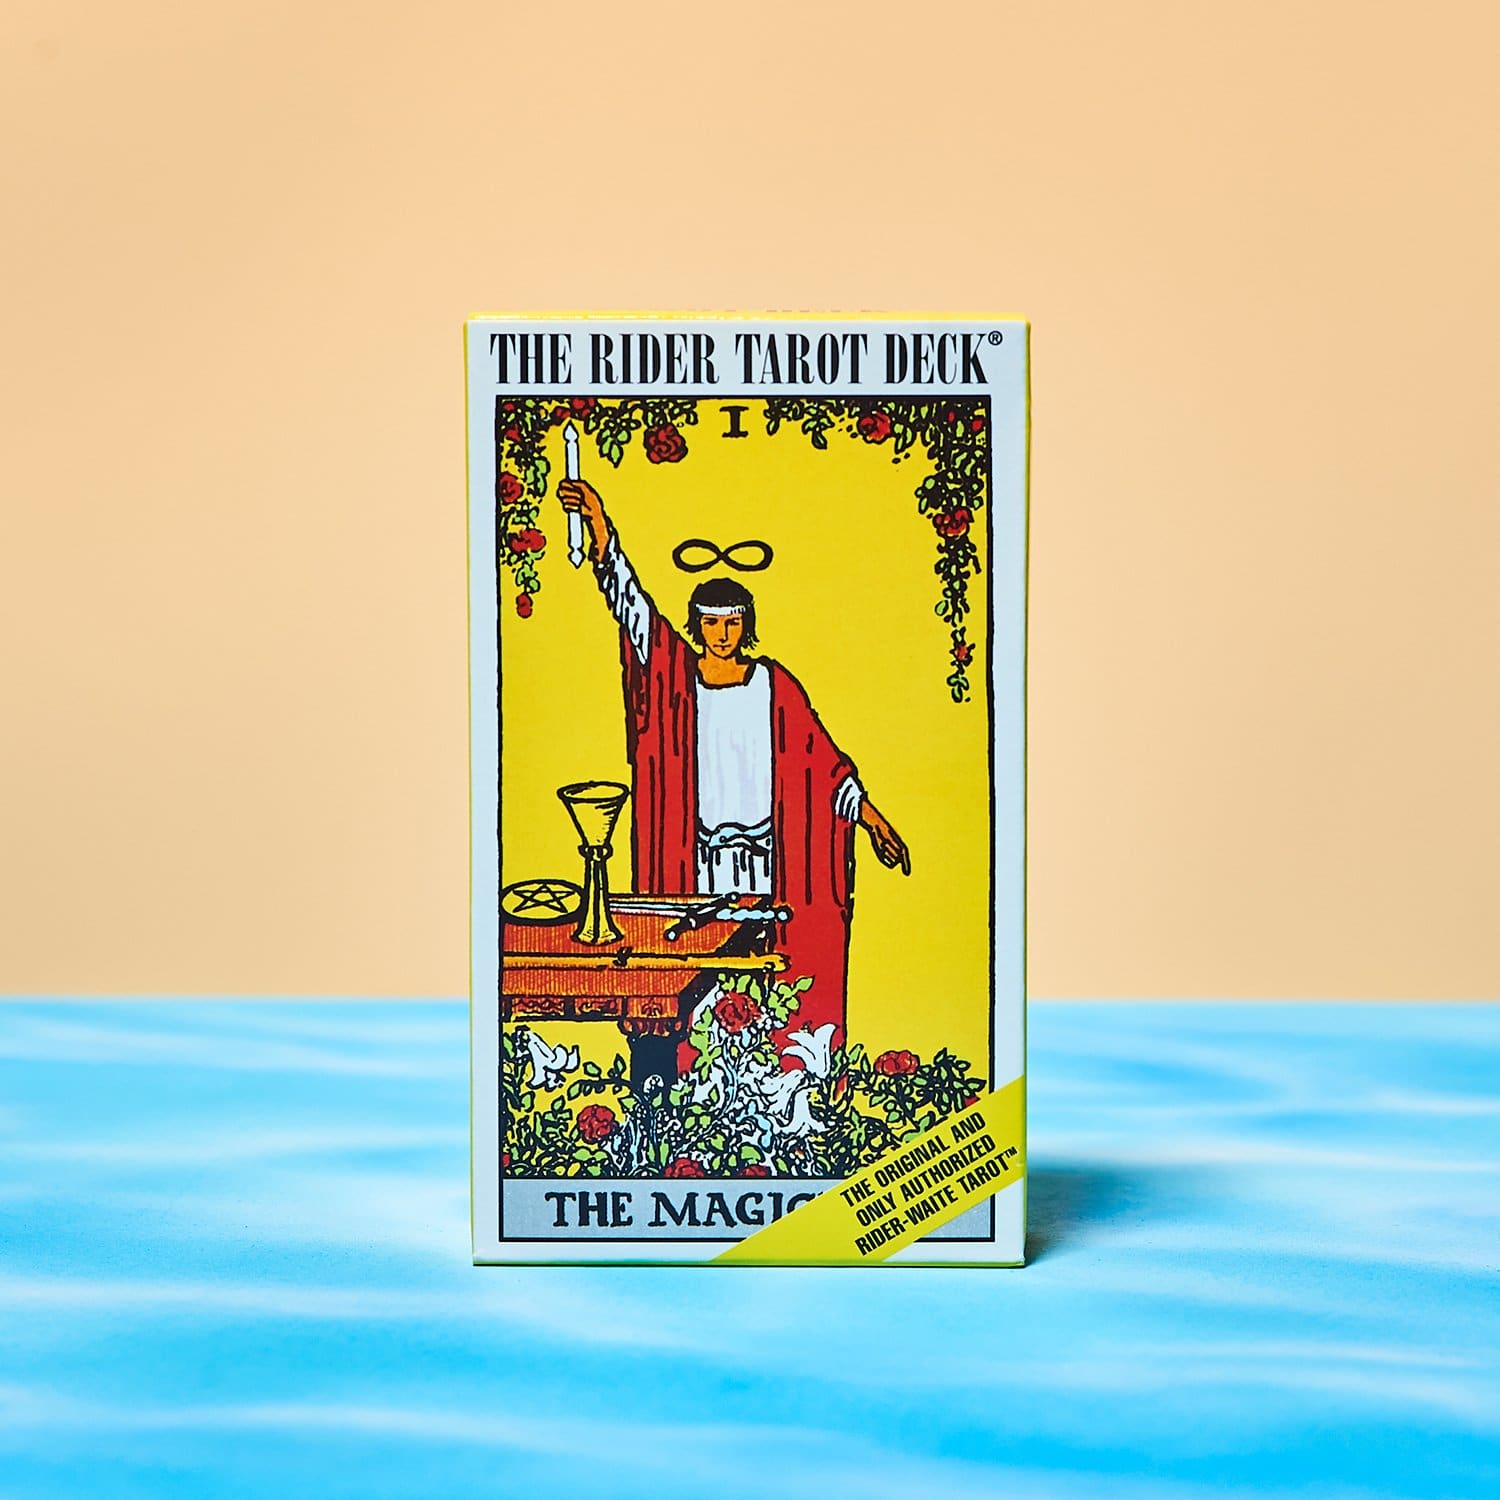 Original Tarot Deck Tarot Reading Cards Tarot Guide Rider Waite